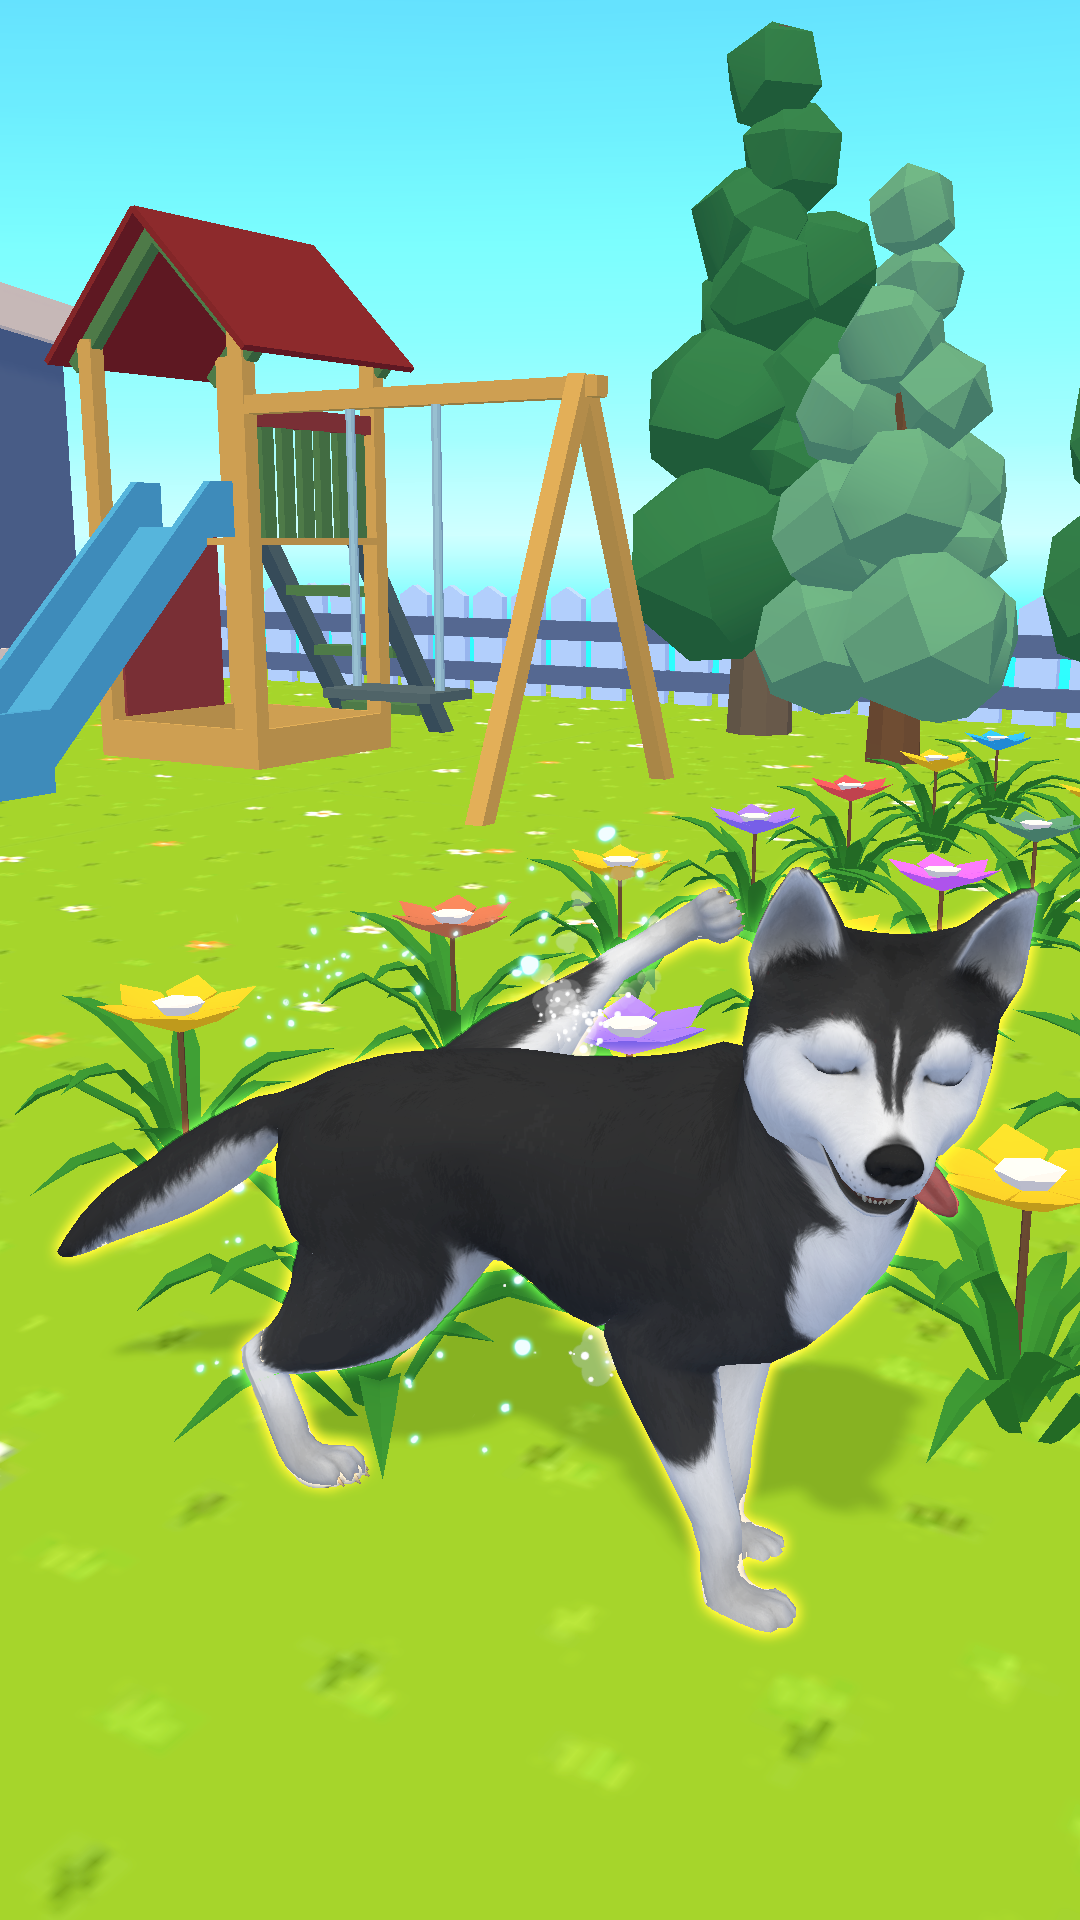 Dog Simulator - Pet Simulator Game for Desktop PC